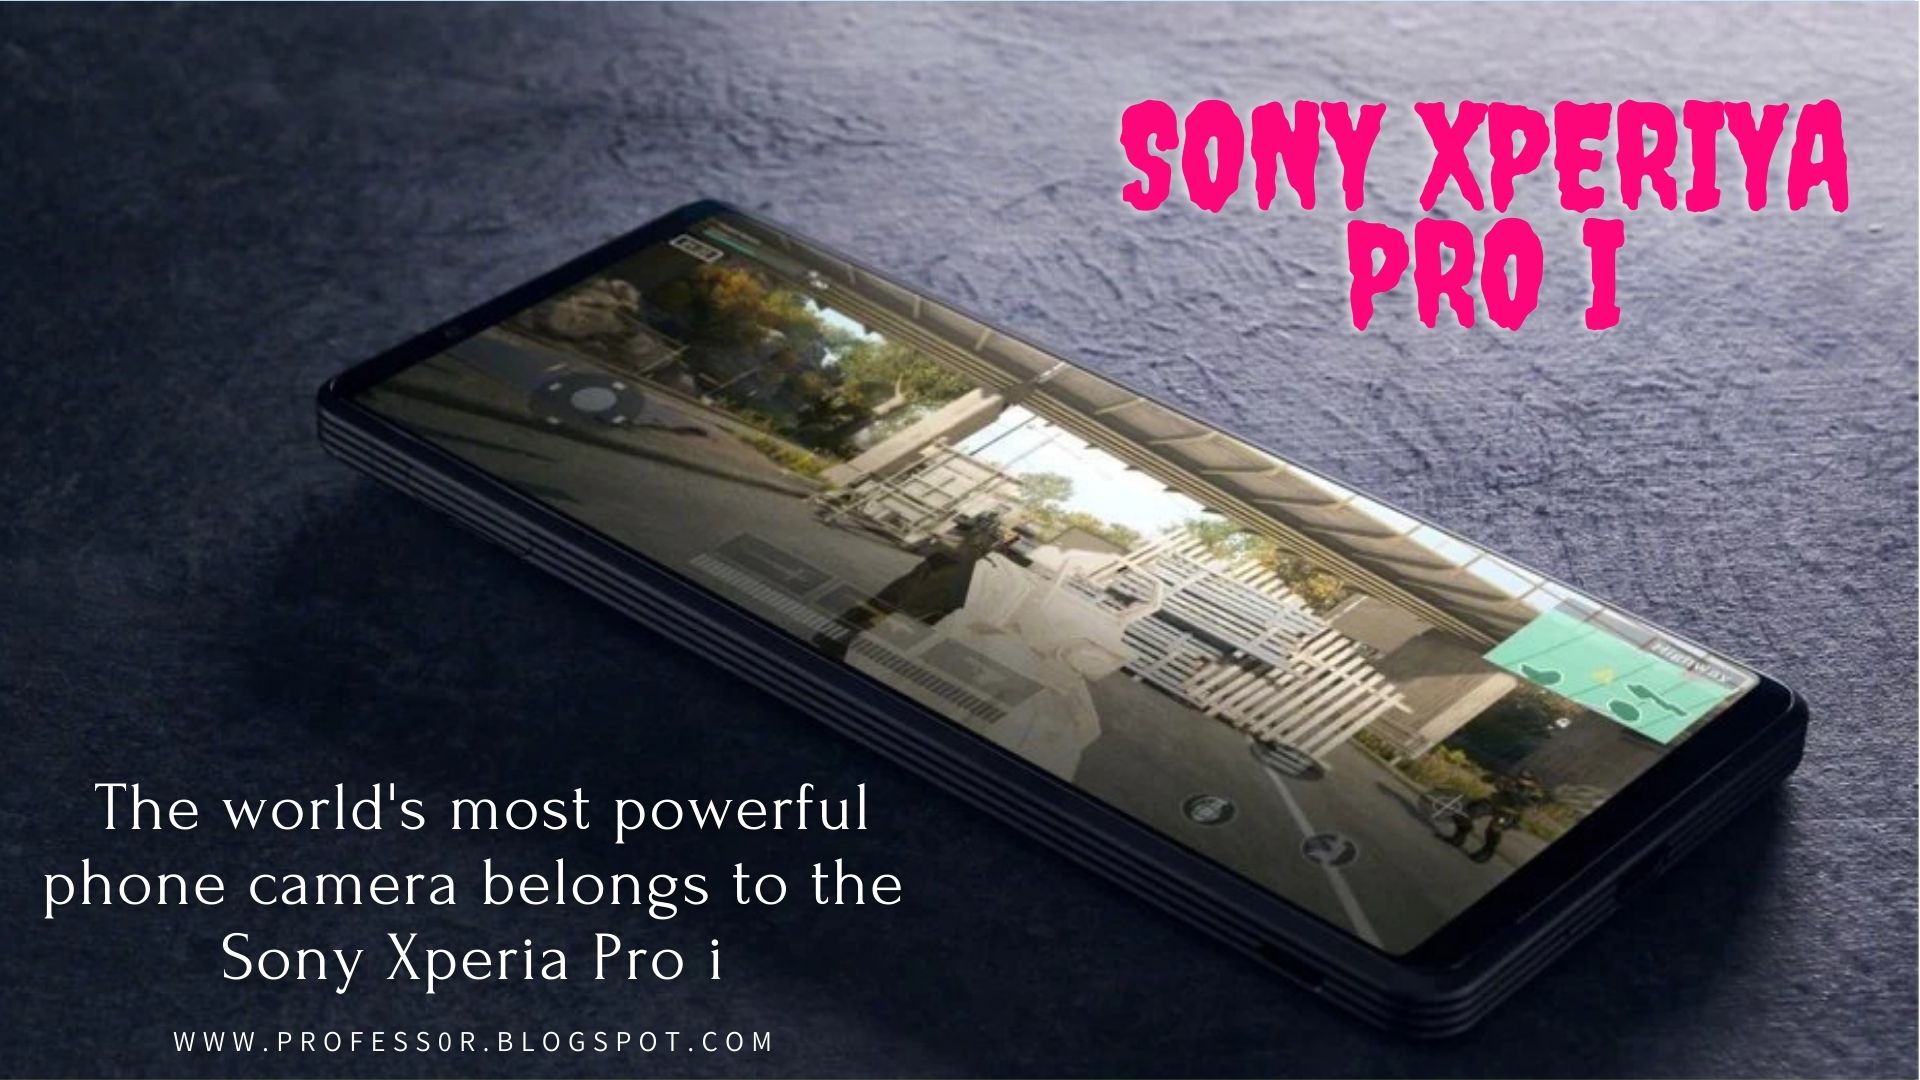 दुनिया का सबसे शक्तिशाली फोन का कैमरा सोनी एक्सपीरिया प्रो आई का है | The world's most powerful phone camera belongs to the Sony Xperia Pro i